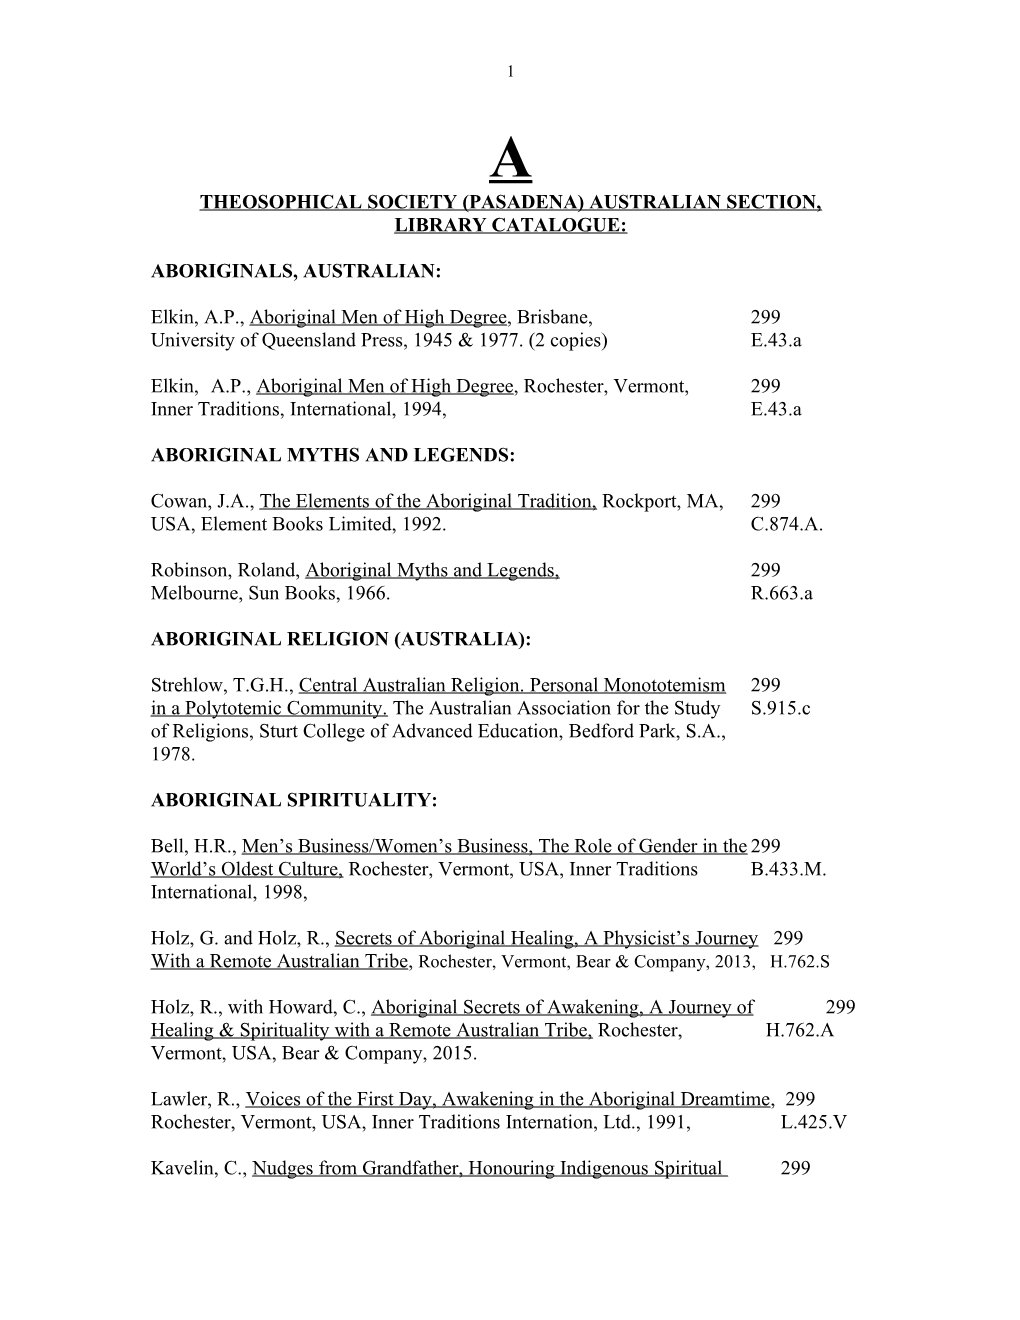 Theosophical Society (Pasadena) Australian Section, Library Catalogue